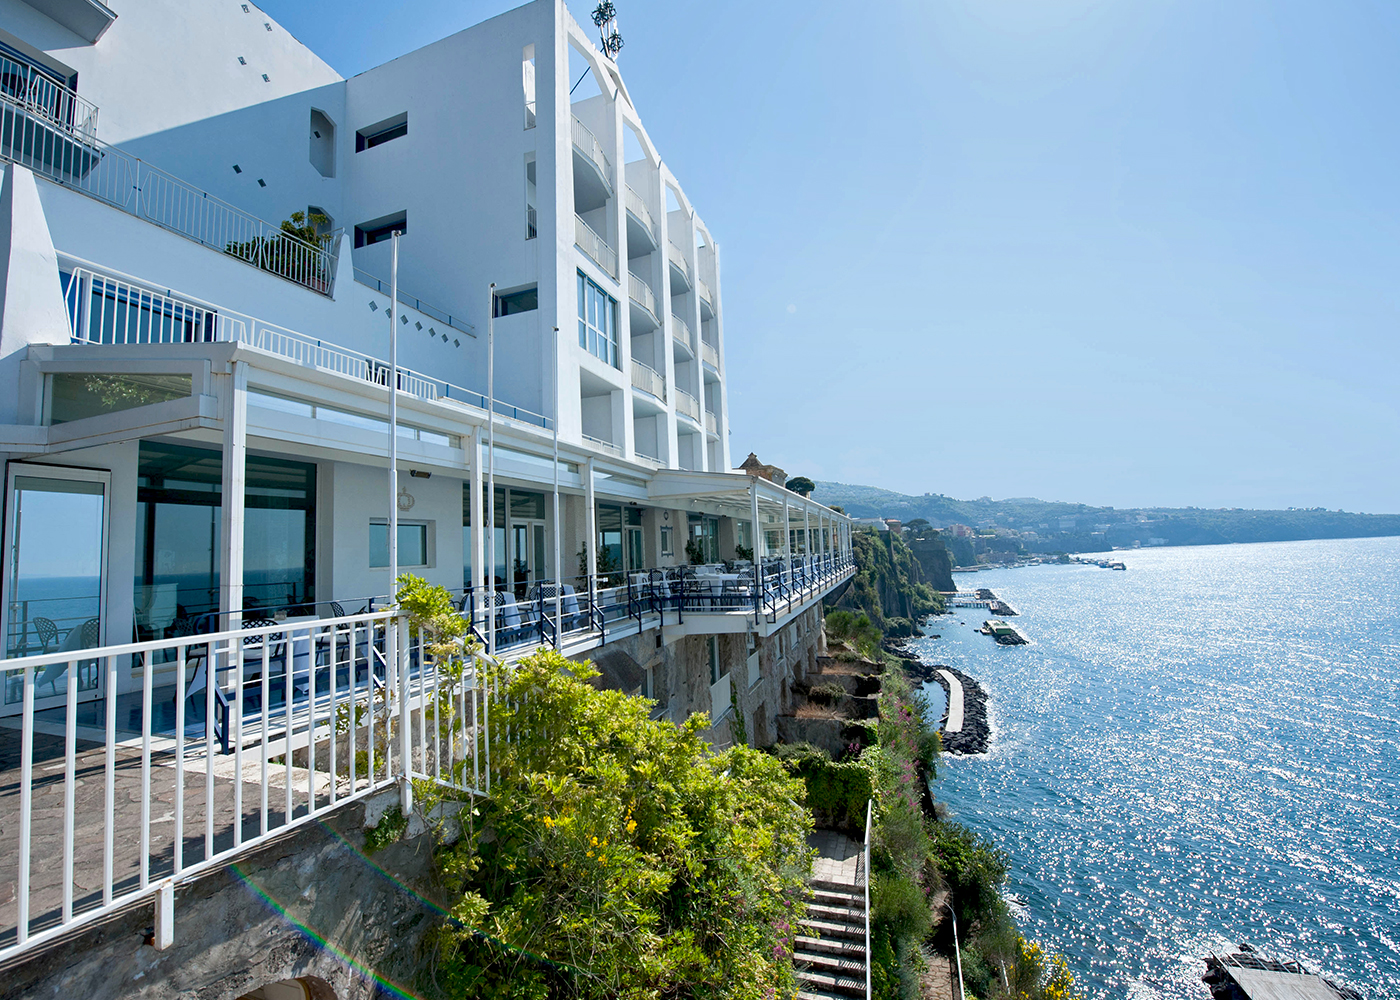 Hotel di lusso a Sorrento a strapiombo sul mare.